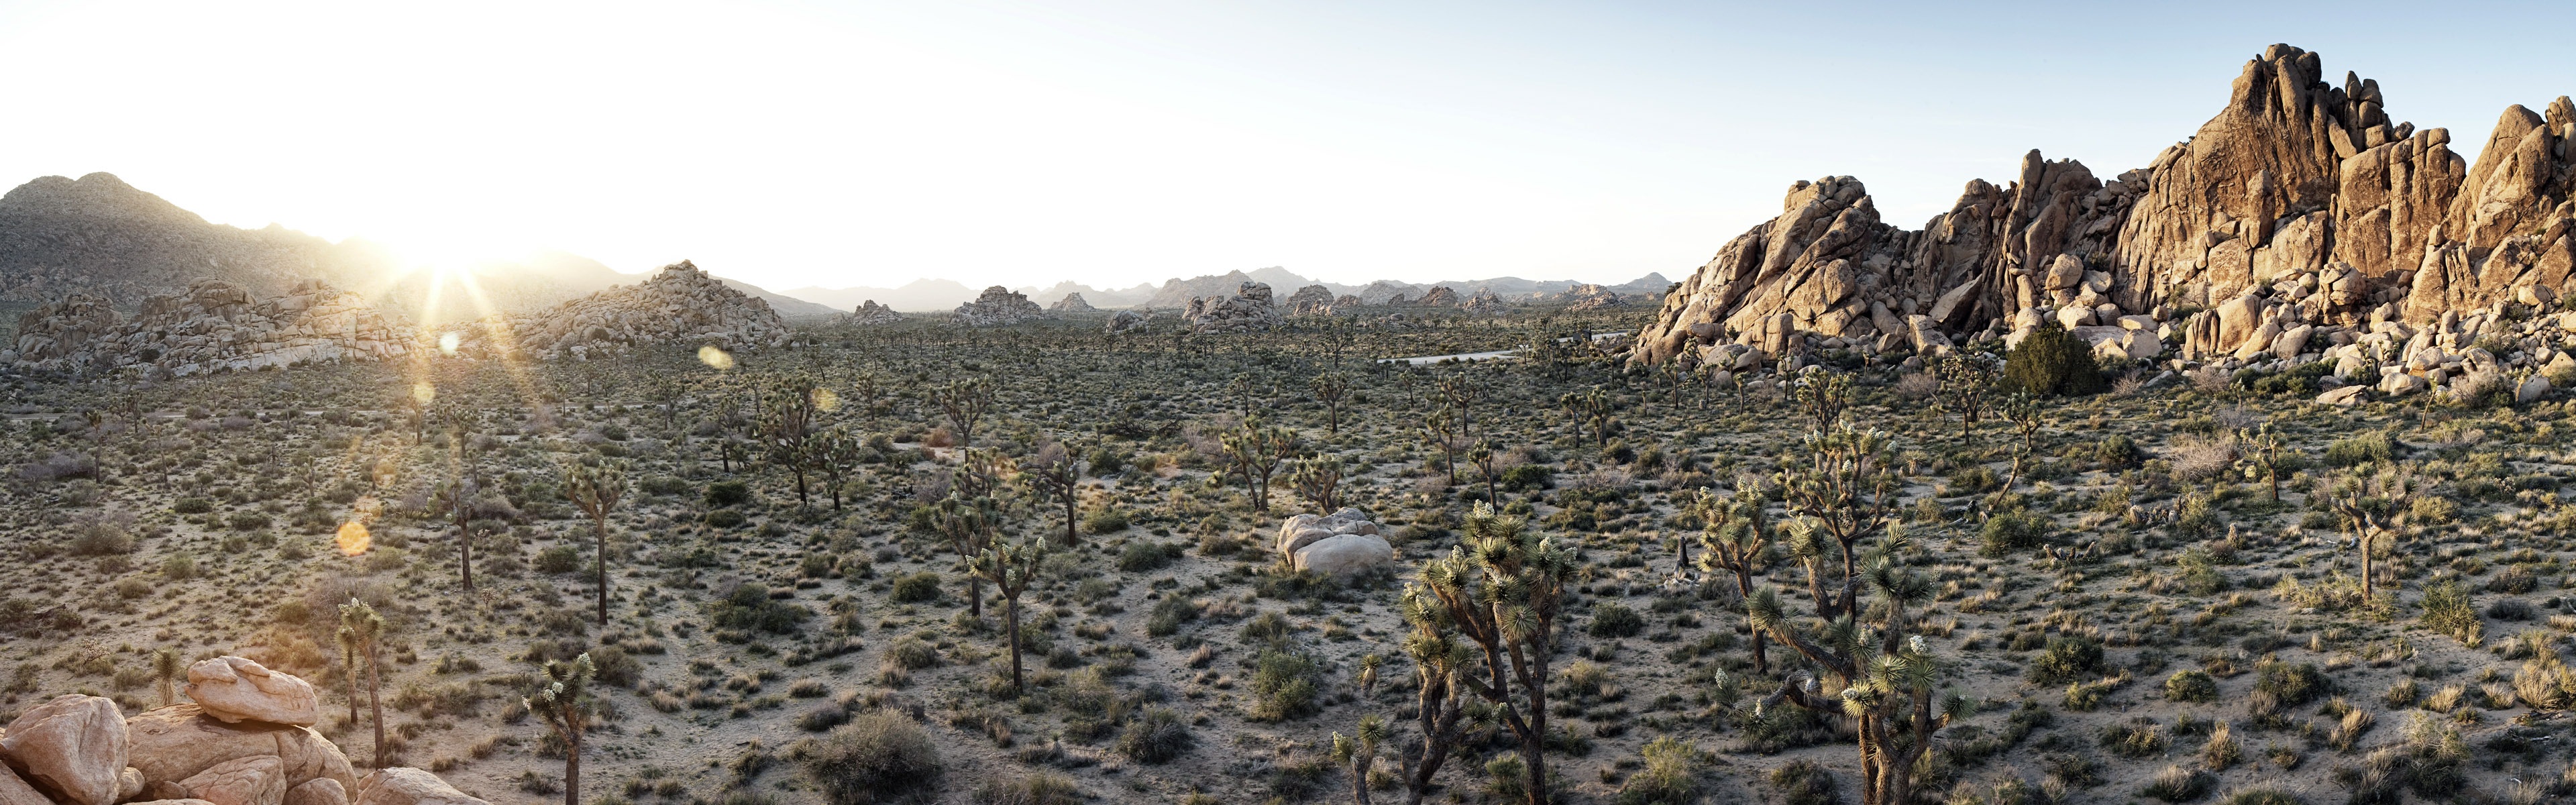 暑くて乾燥した砂漠、Windows 8のパノラマワイドスクリーンの壁紙 #9 - 3840x1200